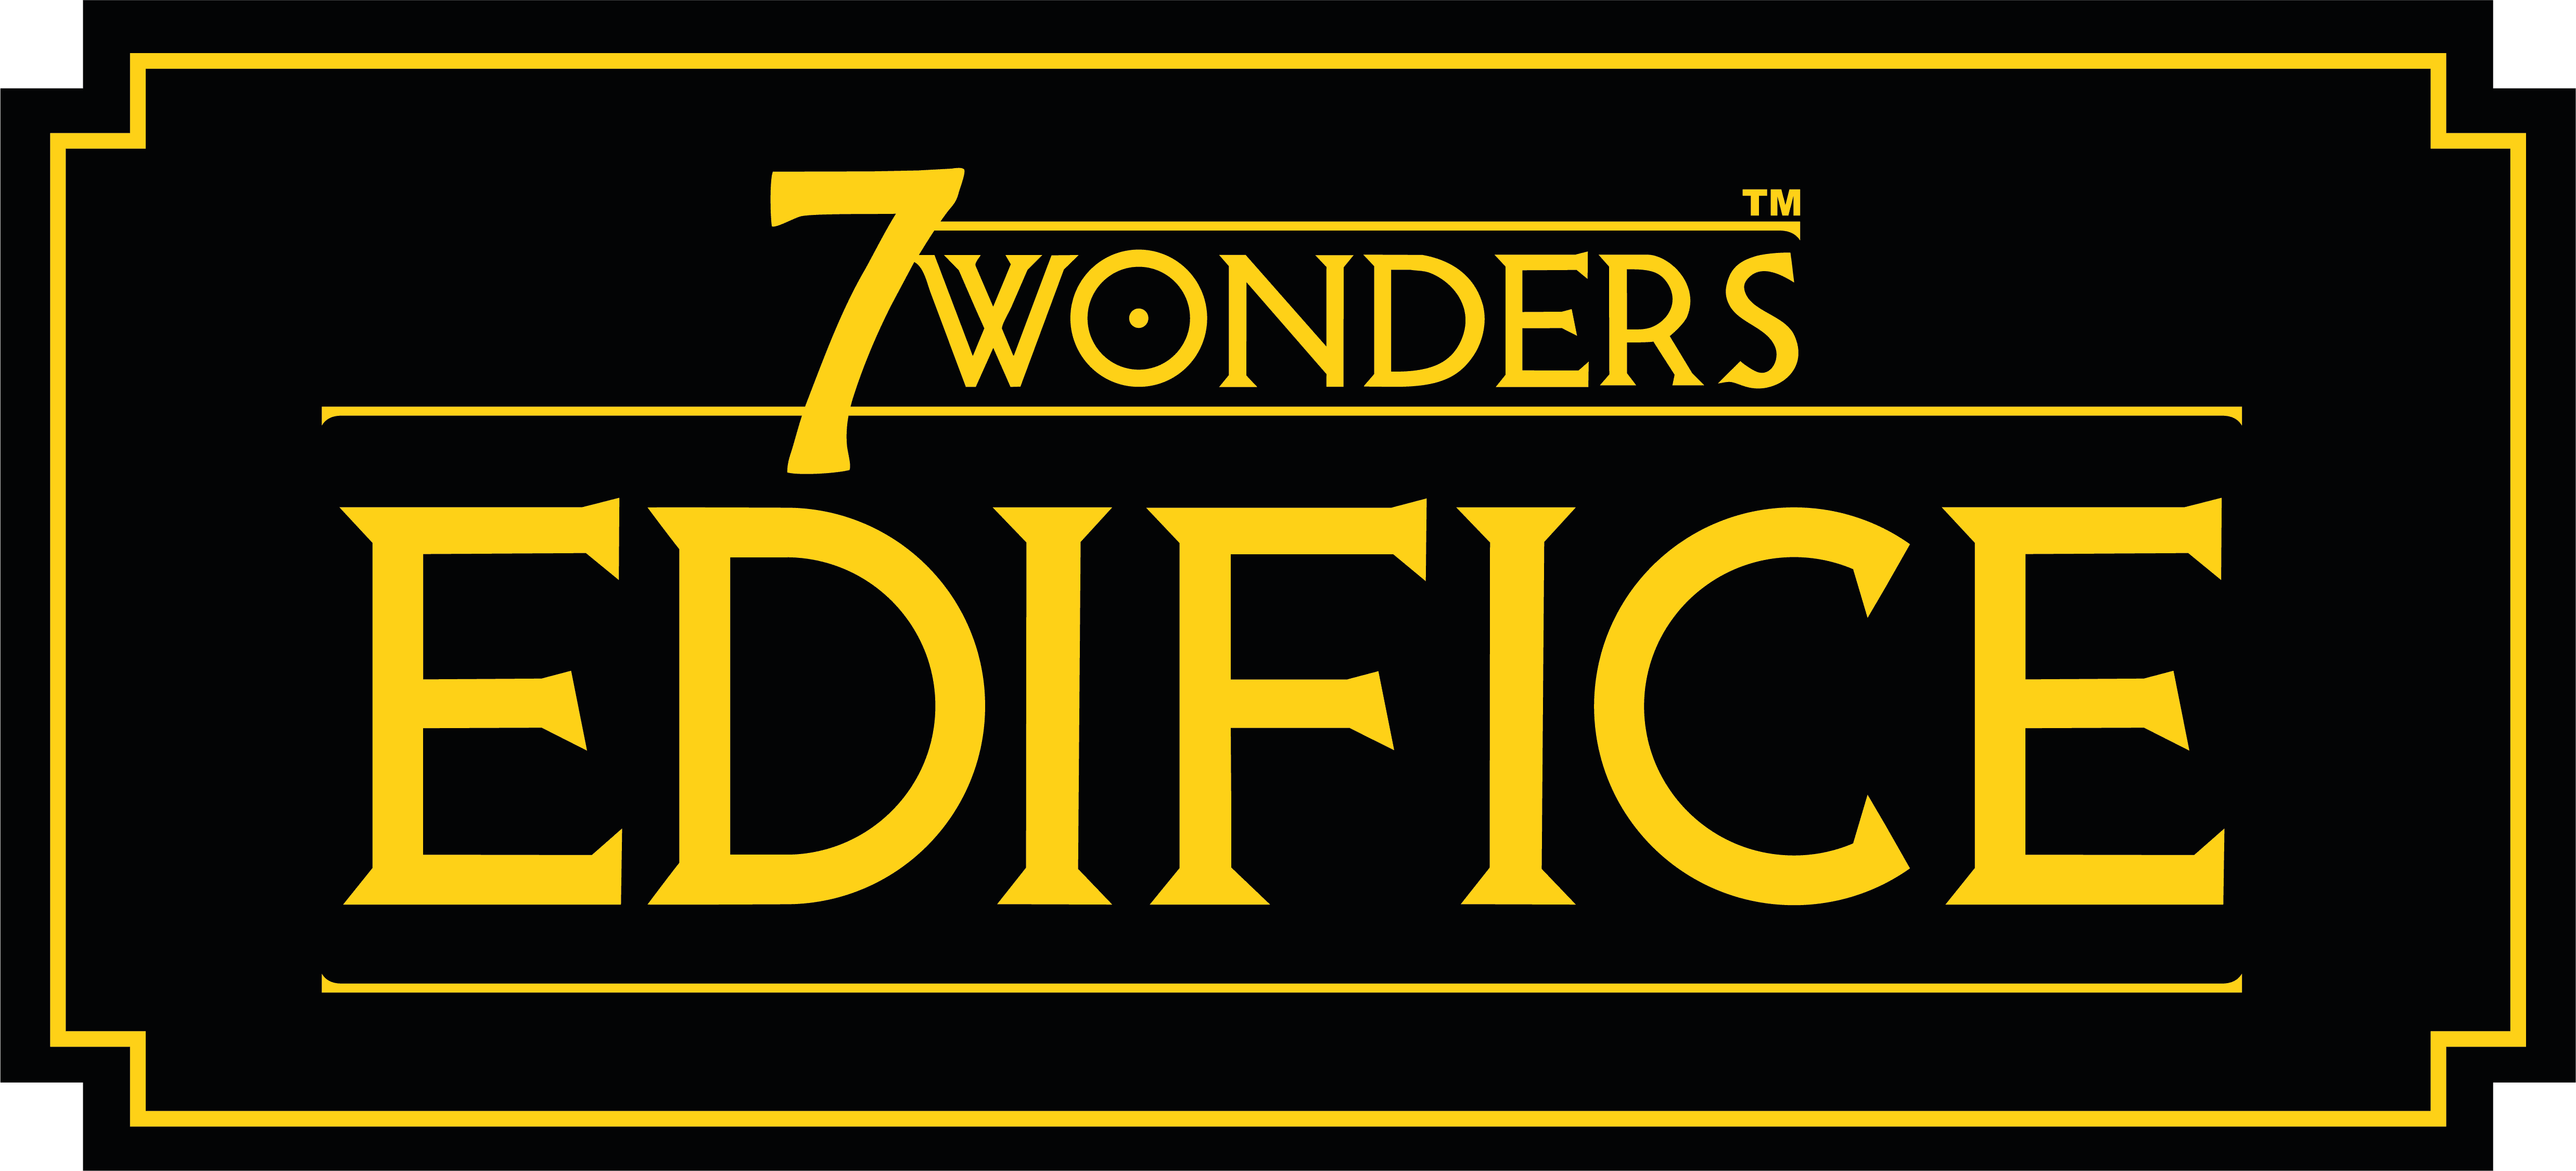 7 Wonders Edifice - nuova espansione